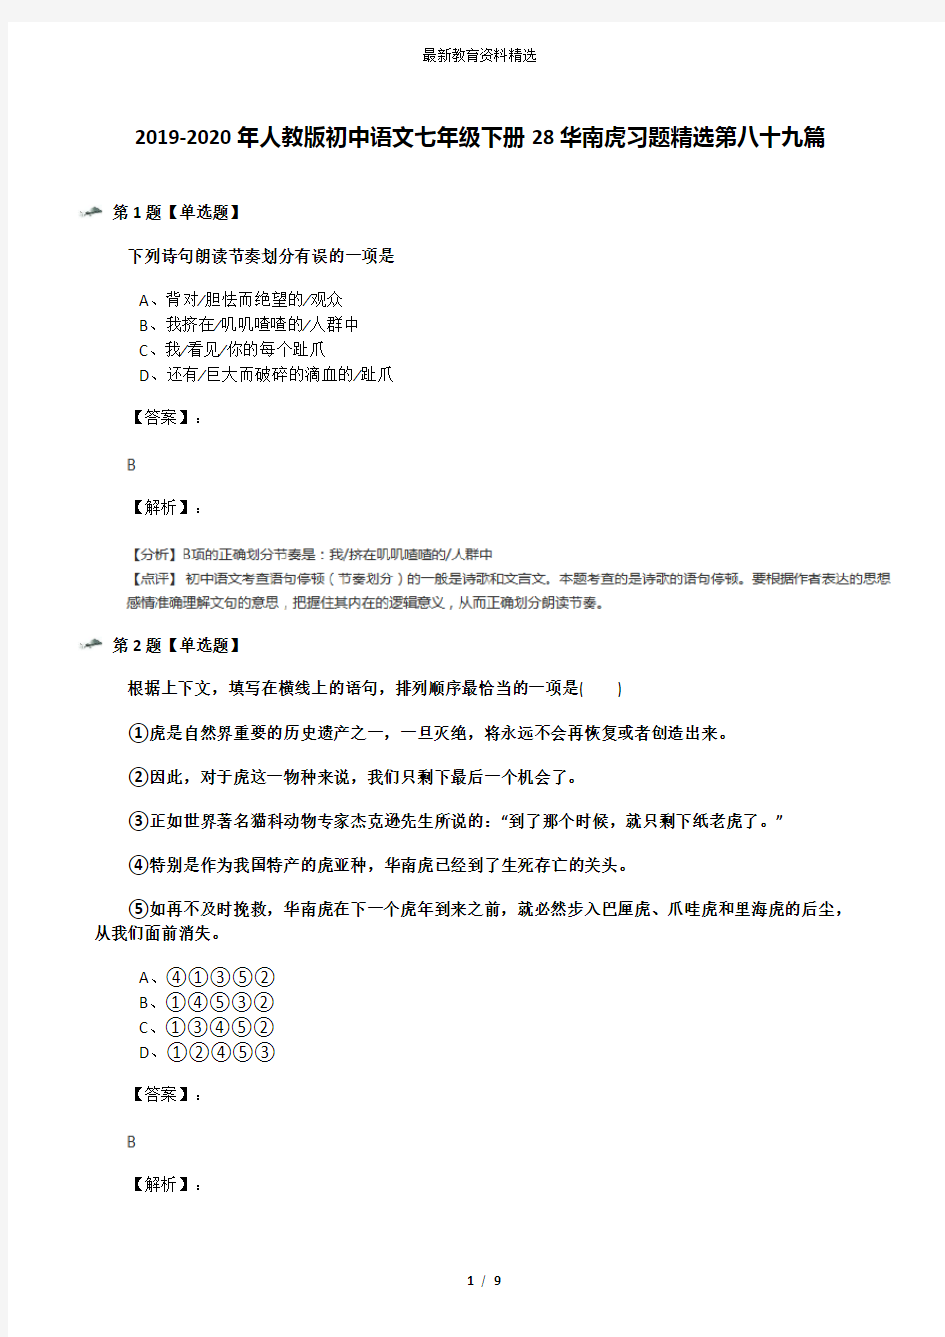 2019-2020年人教版初中语文七年级下册28华南虎习题精选第八十九篇